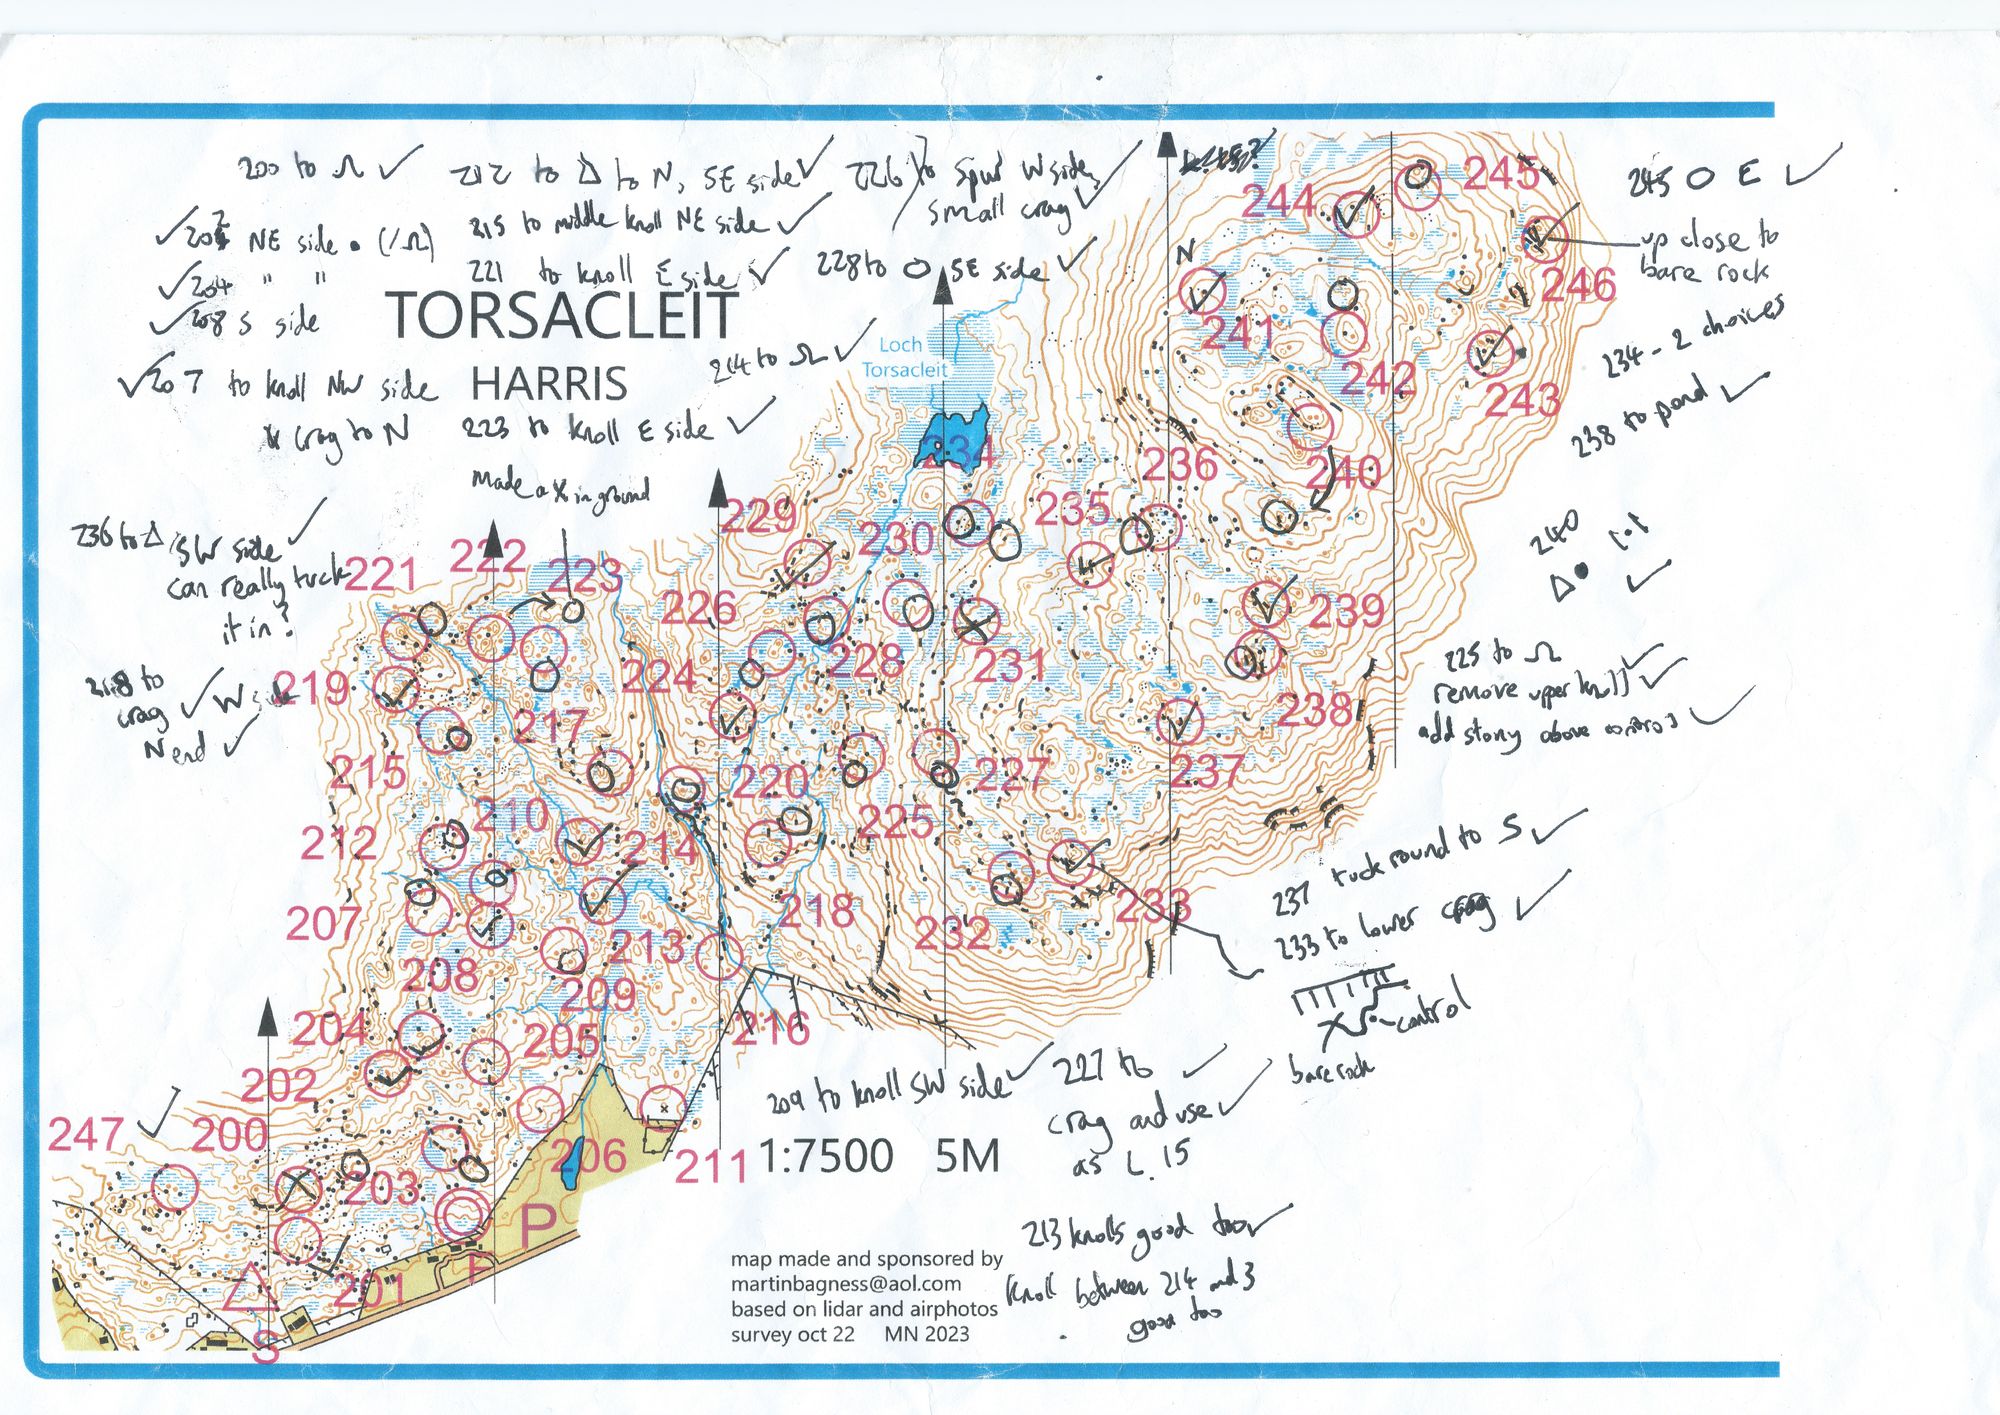 Planning courses - Torsacleit